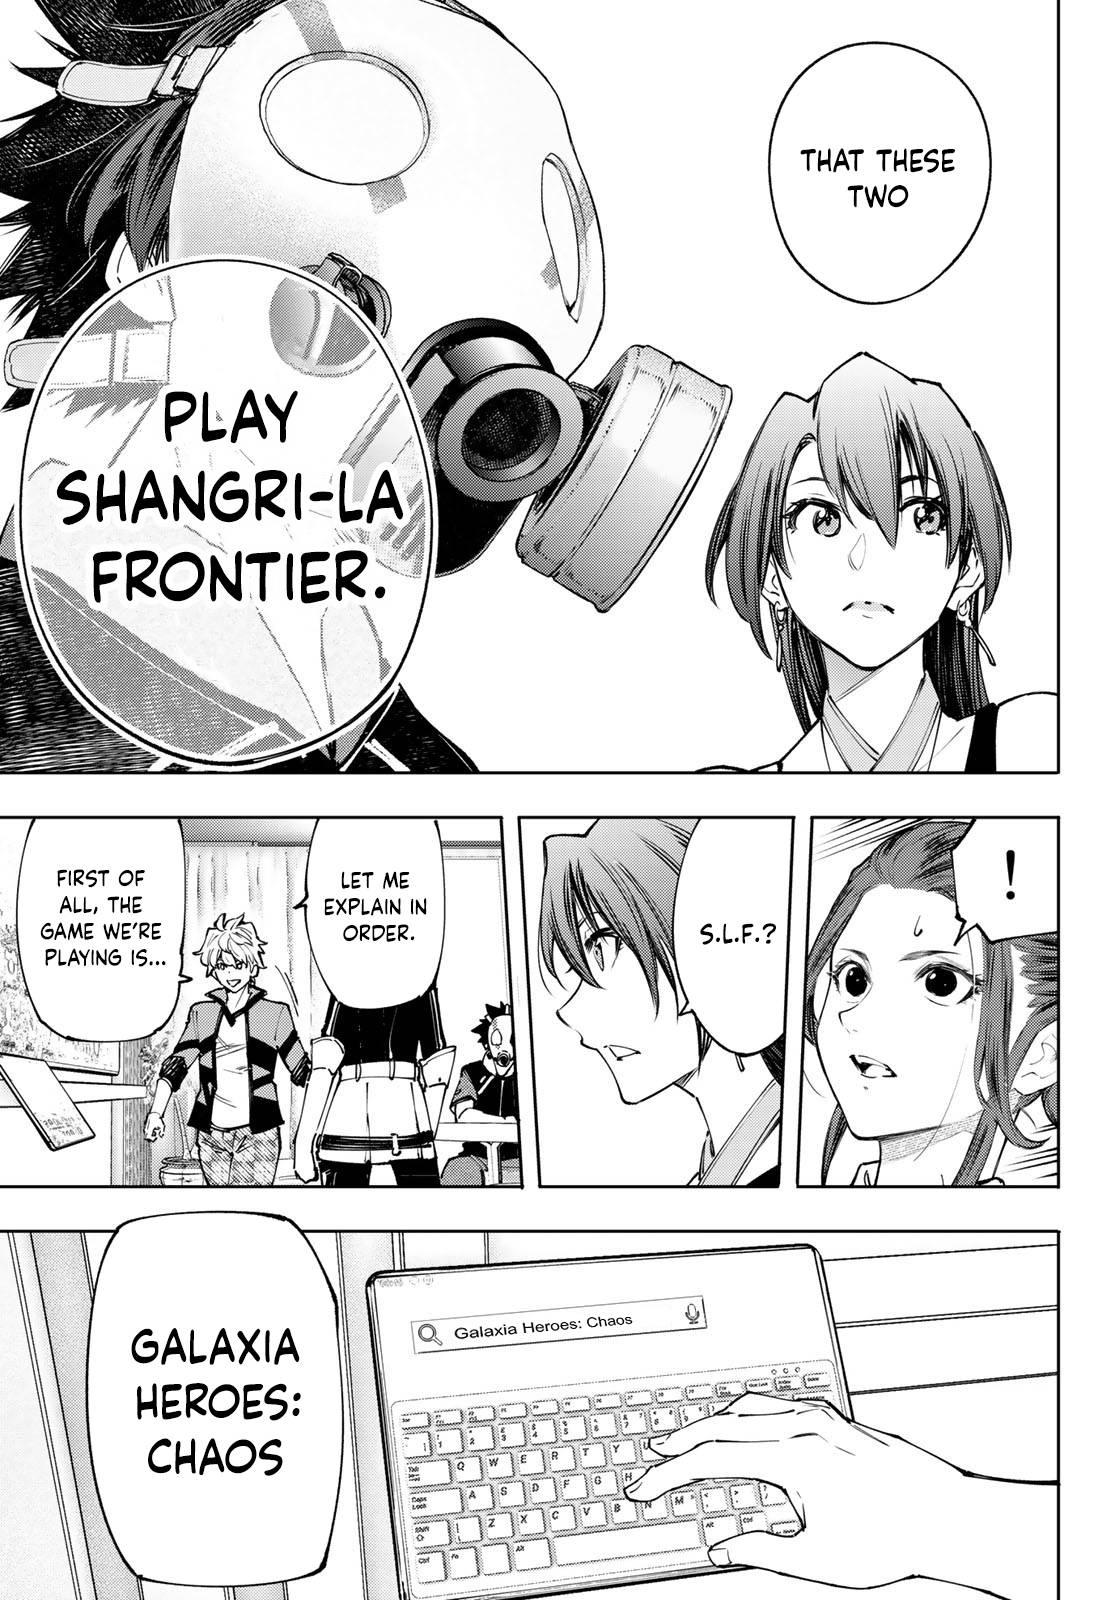 Shangri-La Frontier, chapter 112